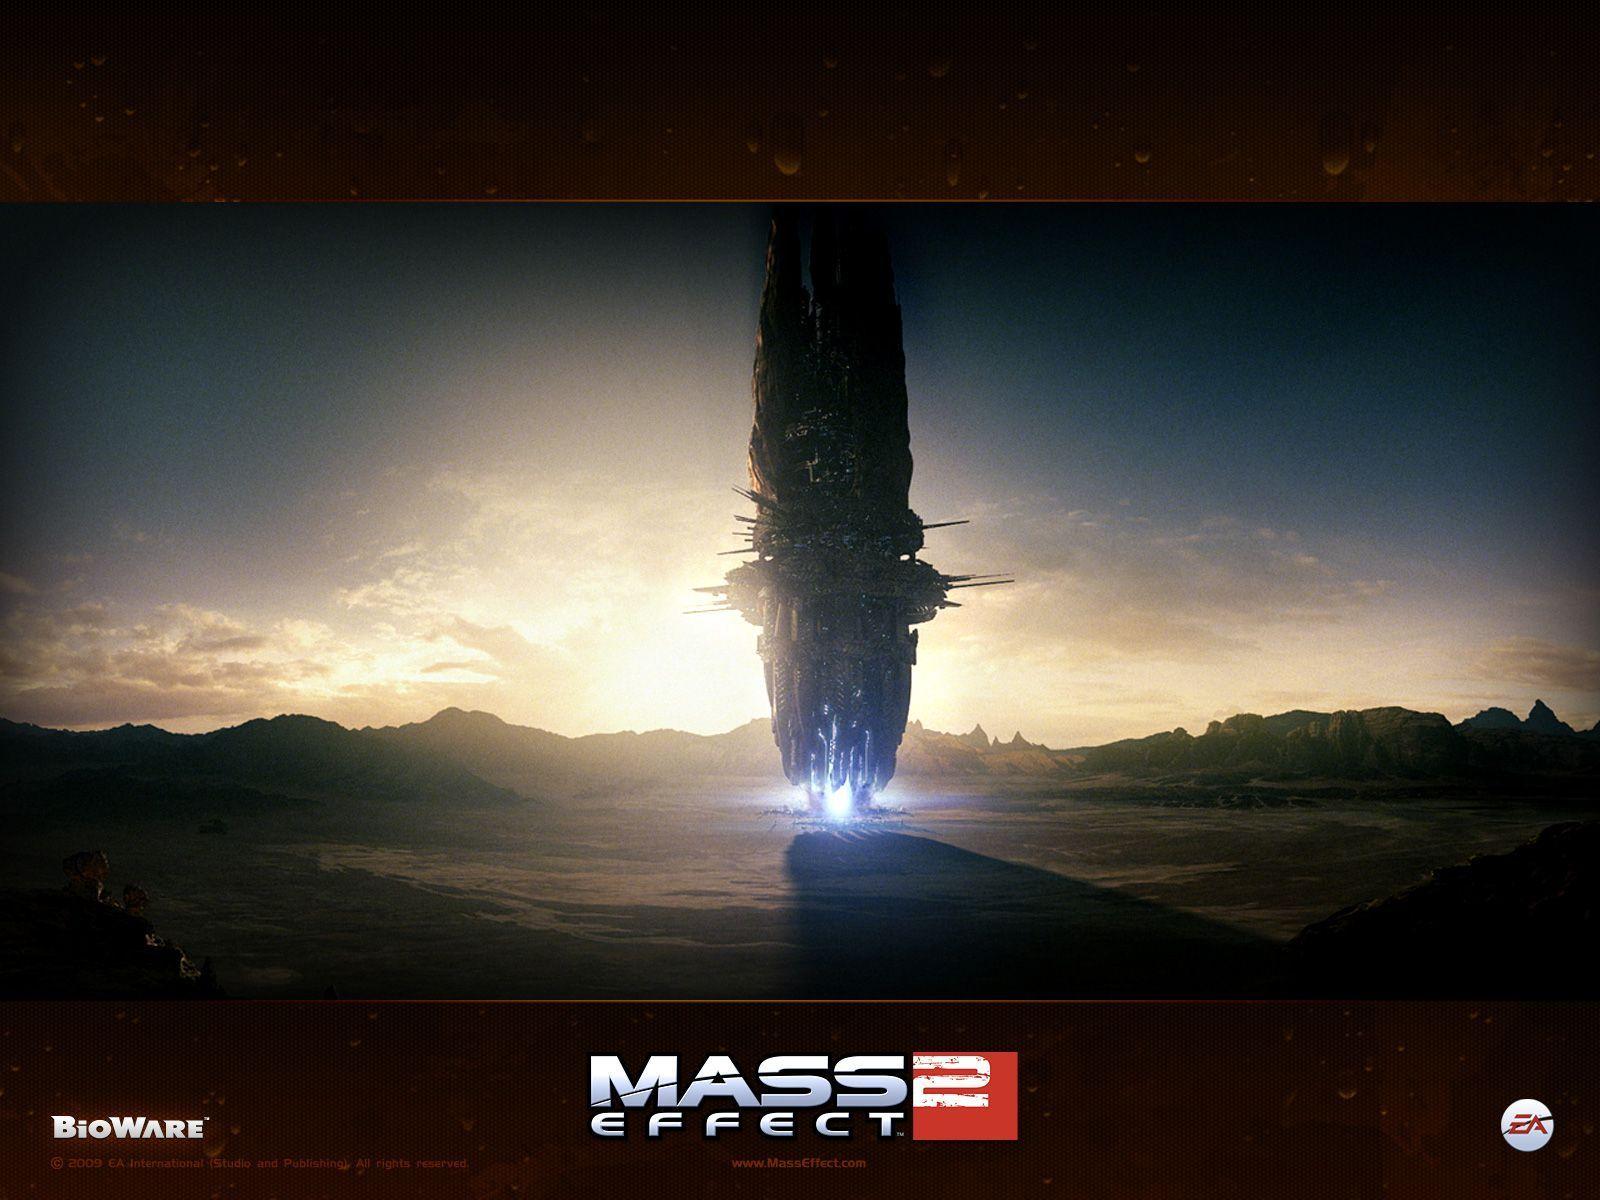 Fond ecran, wallpaper Mass Effect 2